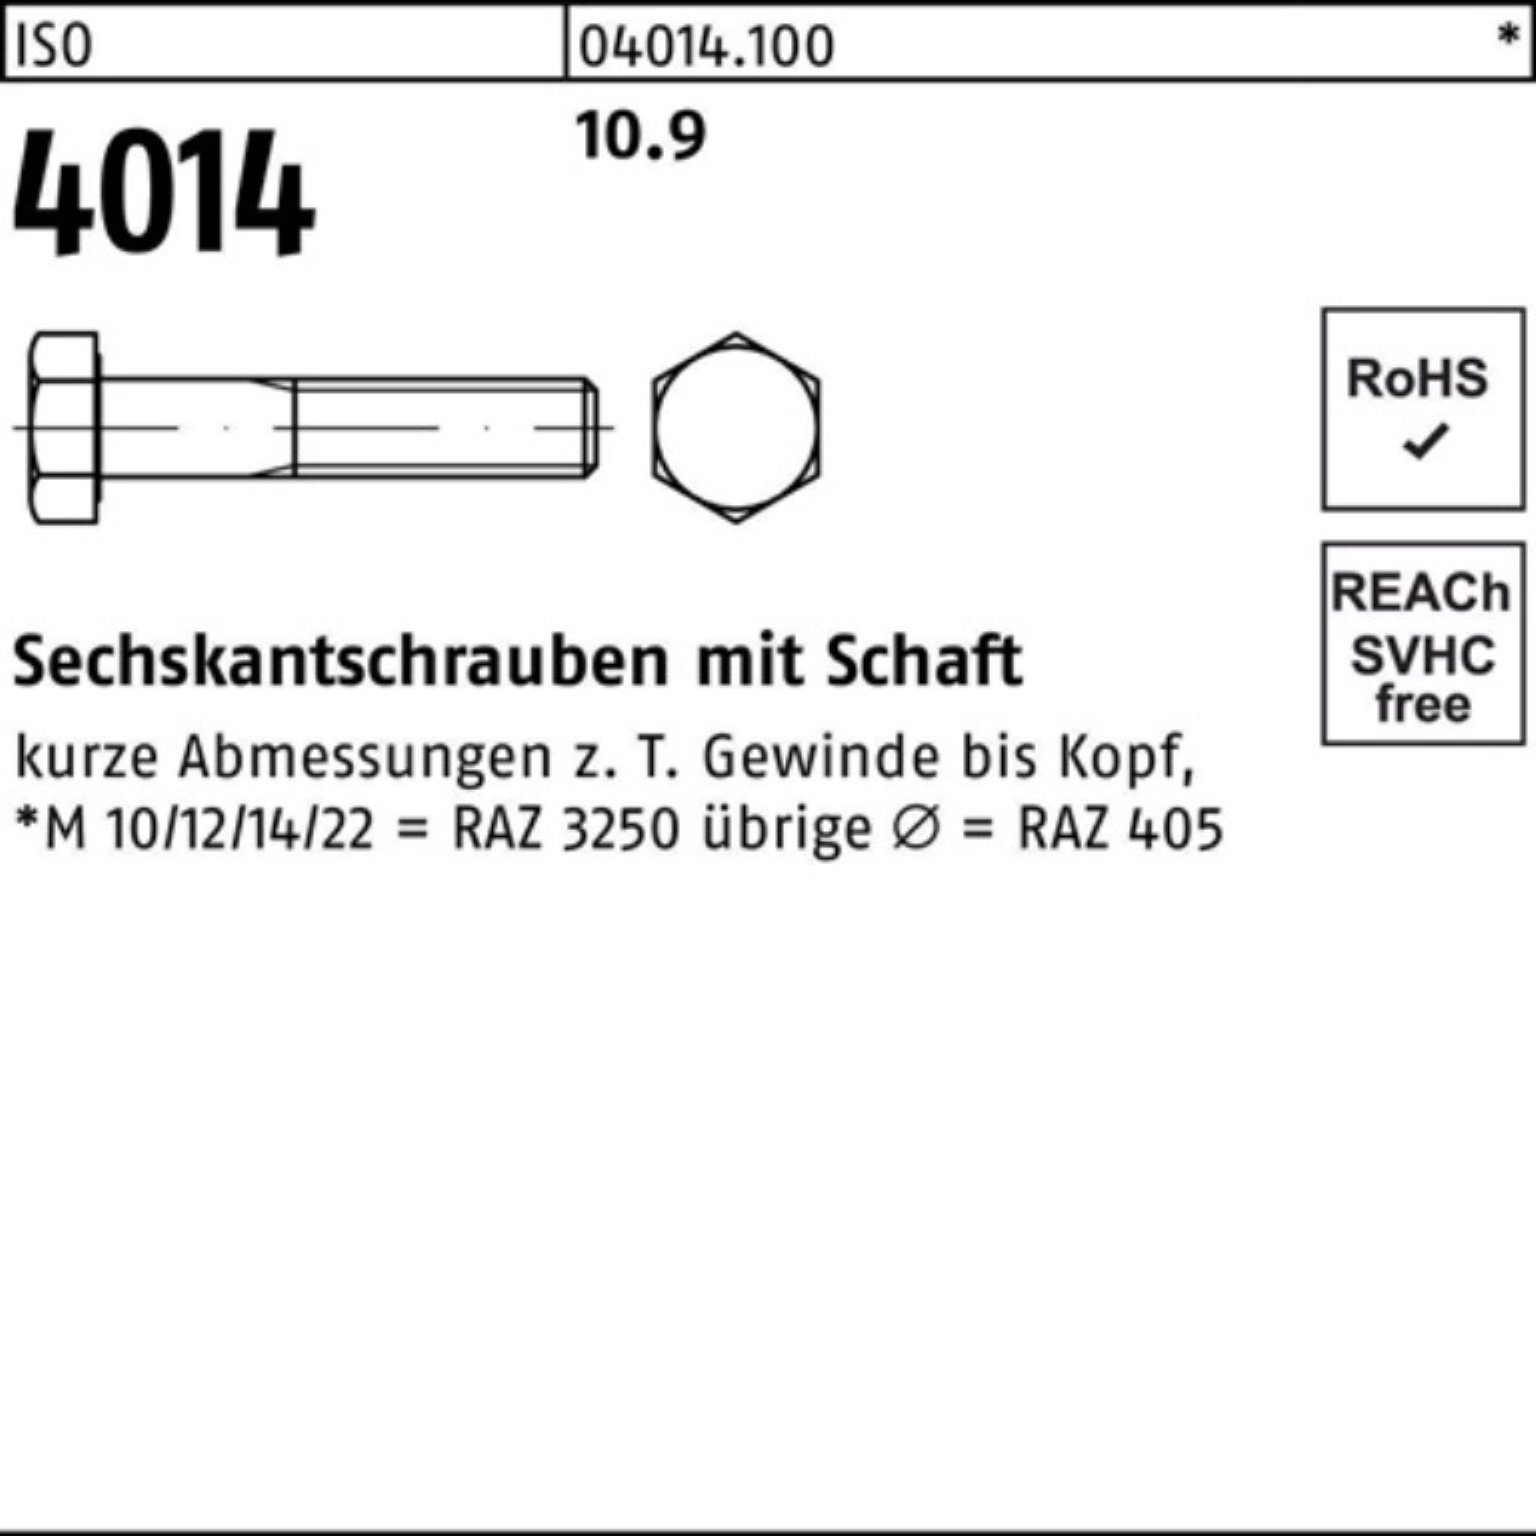 Sechskantschraube Bufab 150 Schaft Pack 4014 25 I M16x 10.9 Sechskantschraube Stück 100er ISO